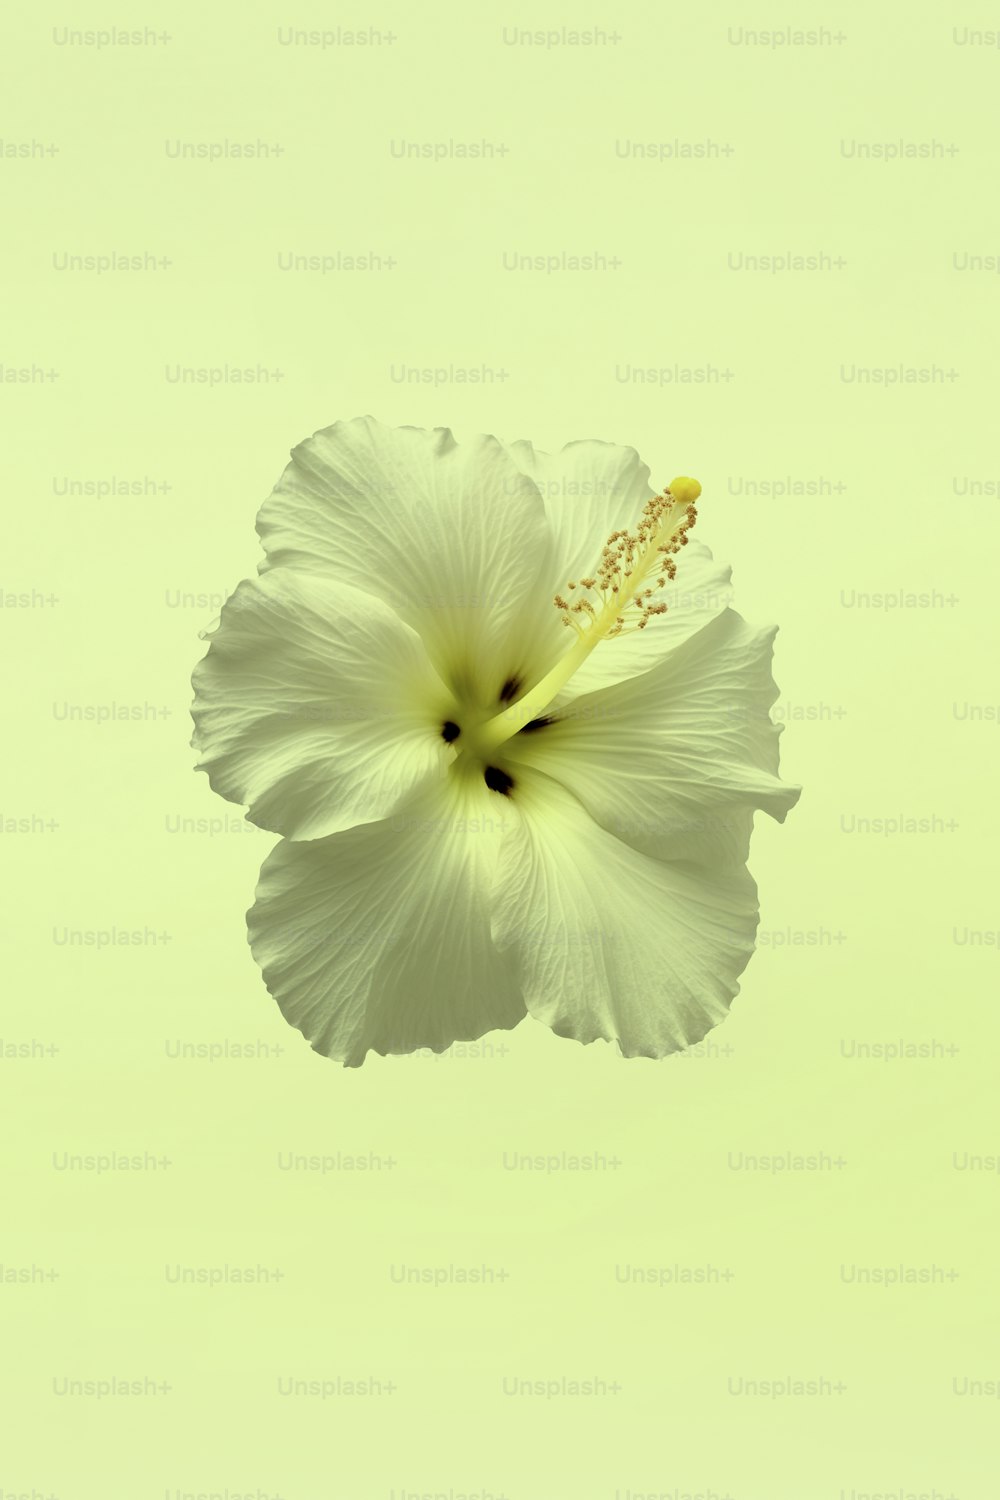 Una flor blanca con un centro amarillo en el aire